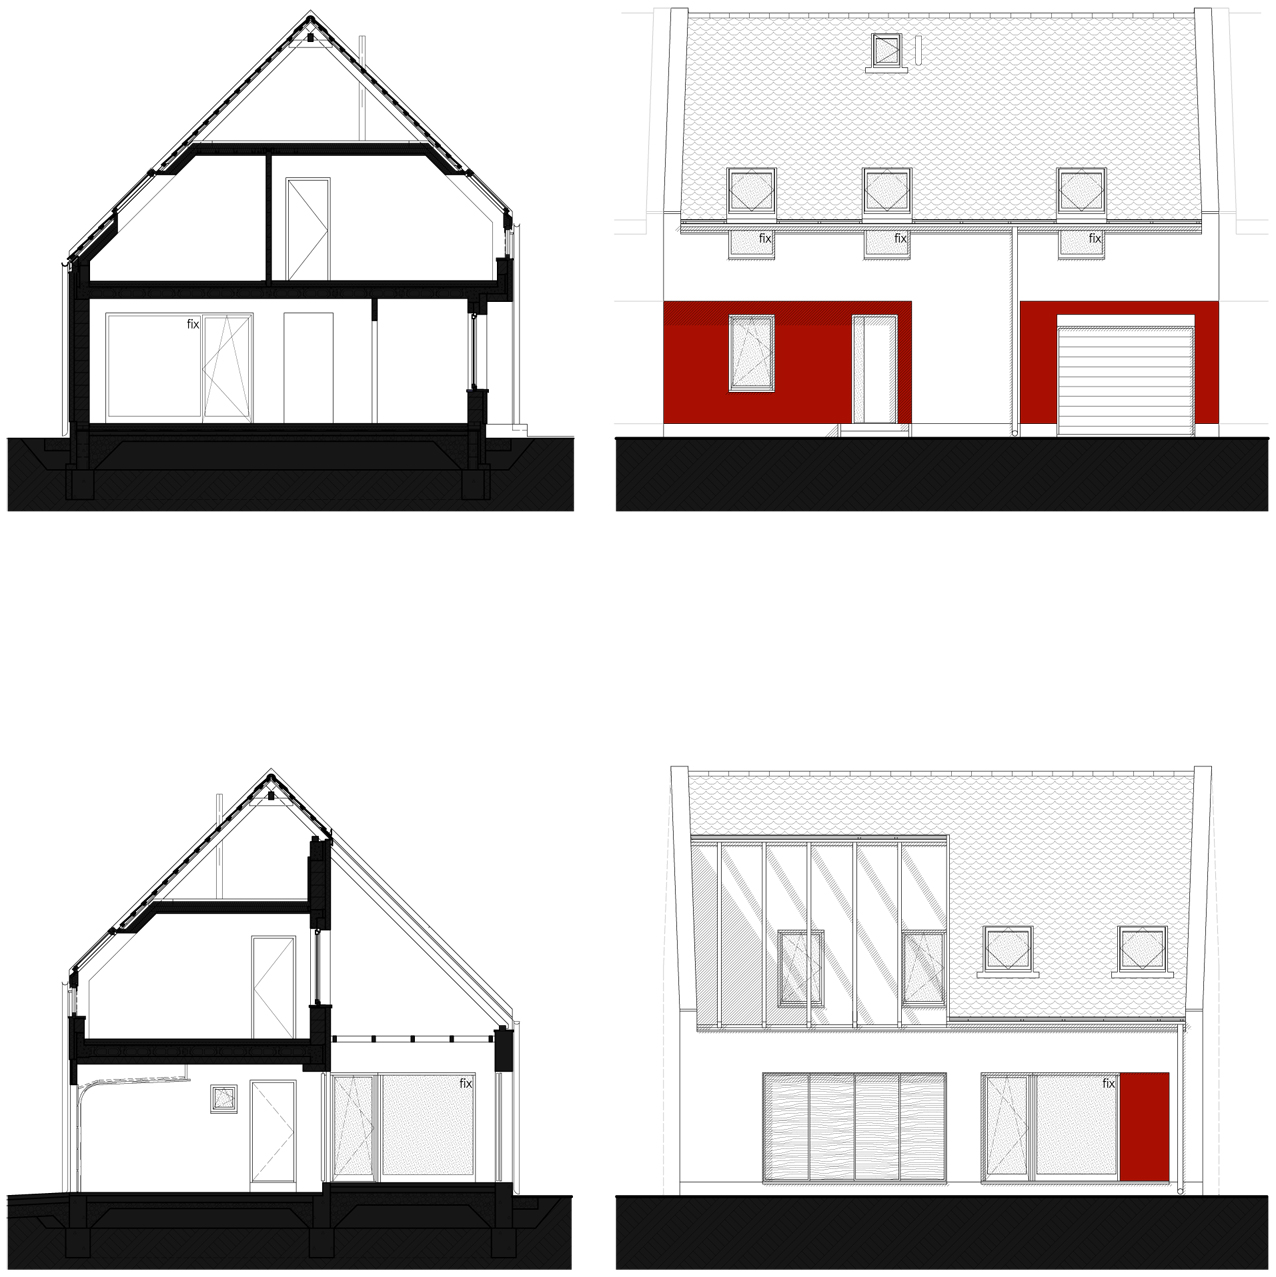 tervezett metszetek és homlokzatok - 4 szobás-patiós változat